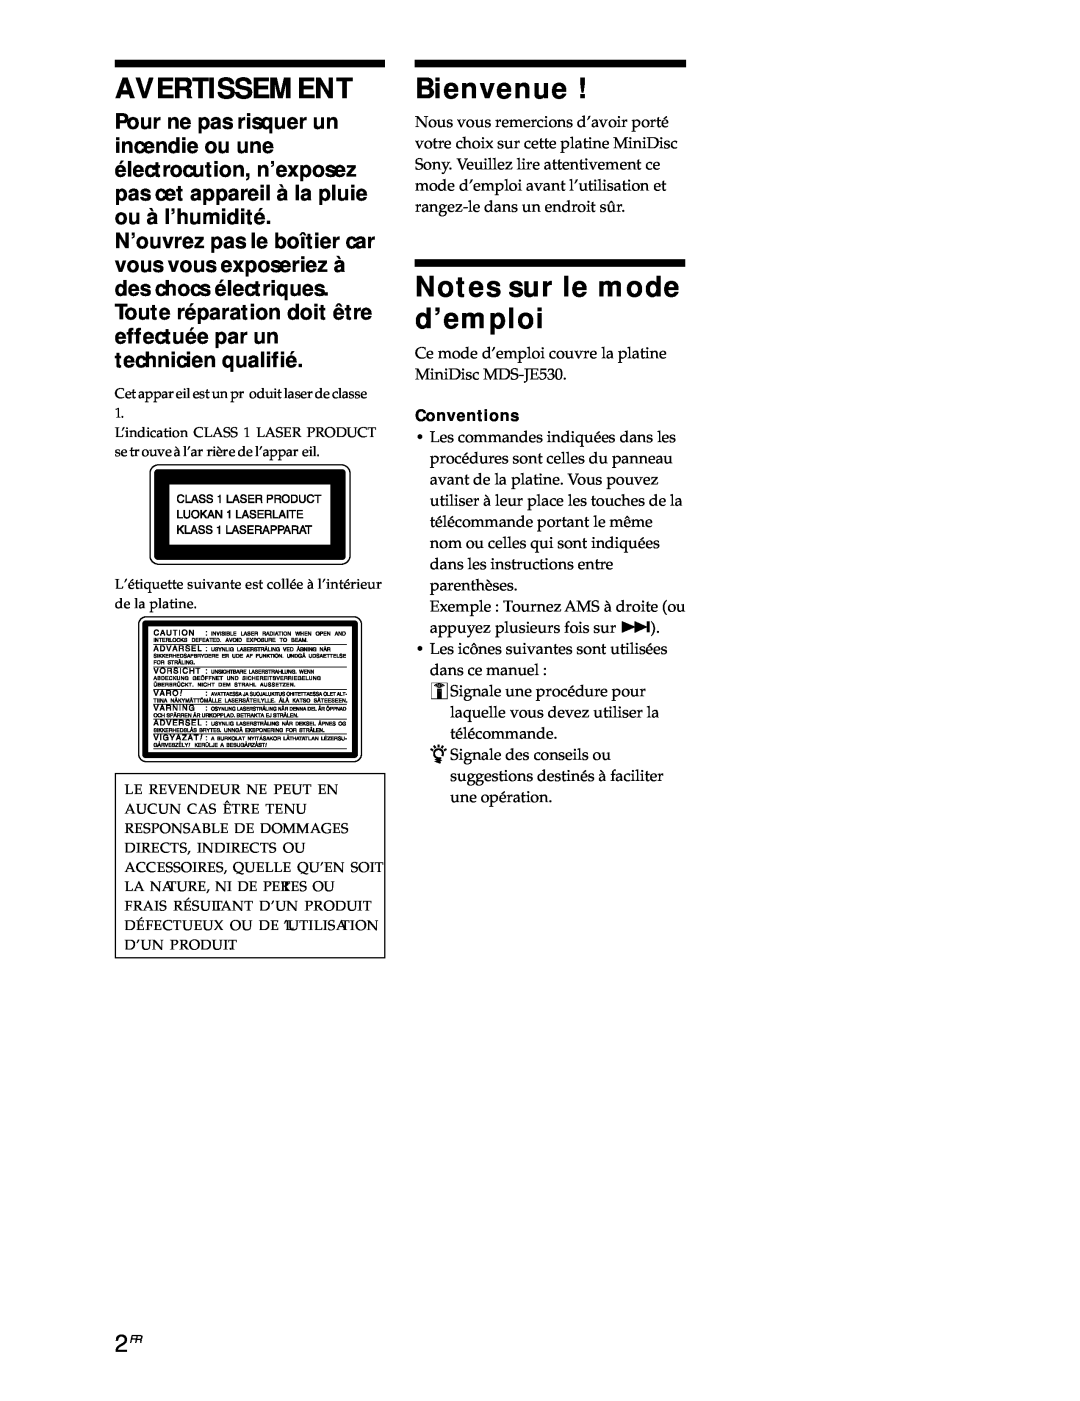 Sony MDS-JE530 manual Avertissement, Bienvenue, Notes sur le mode d’emploi 